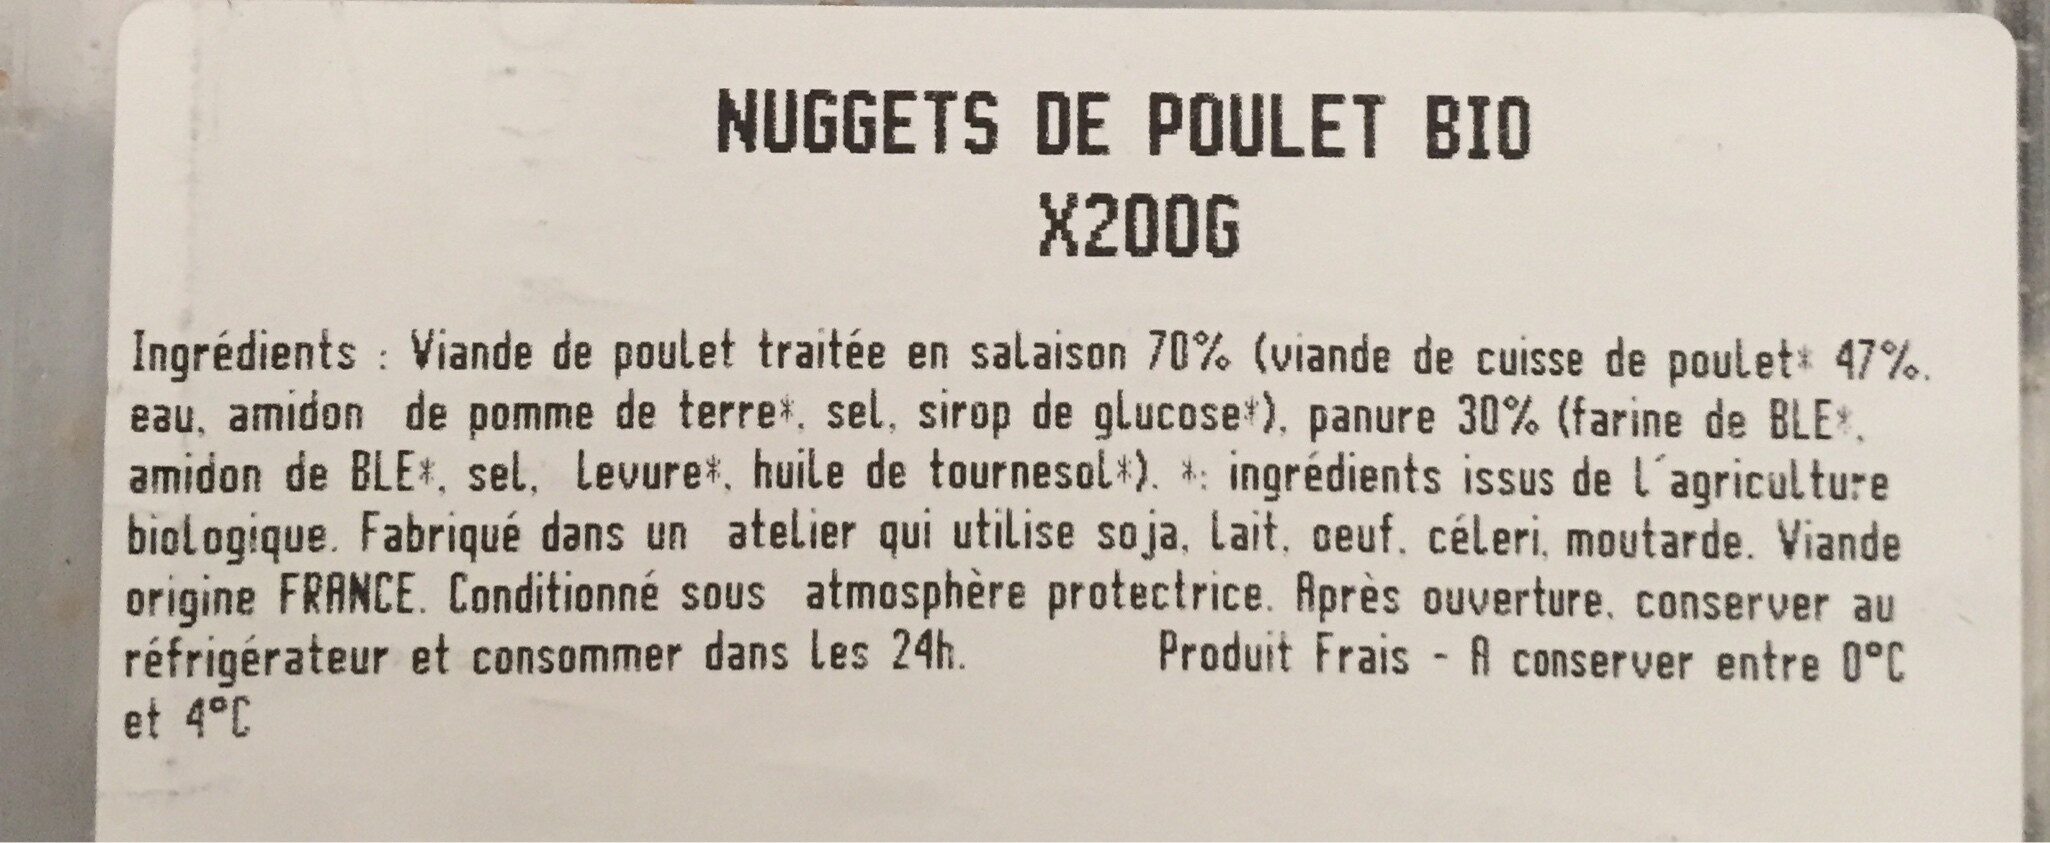 Nuggets de poulet bio - Ingrédients - fr